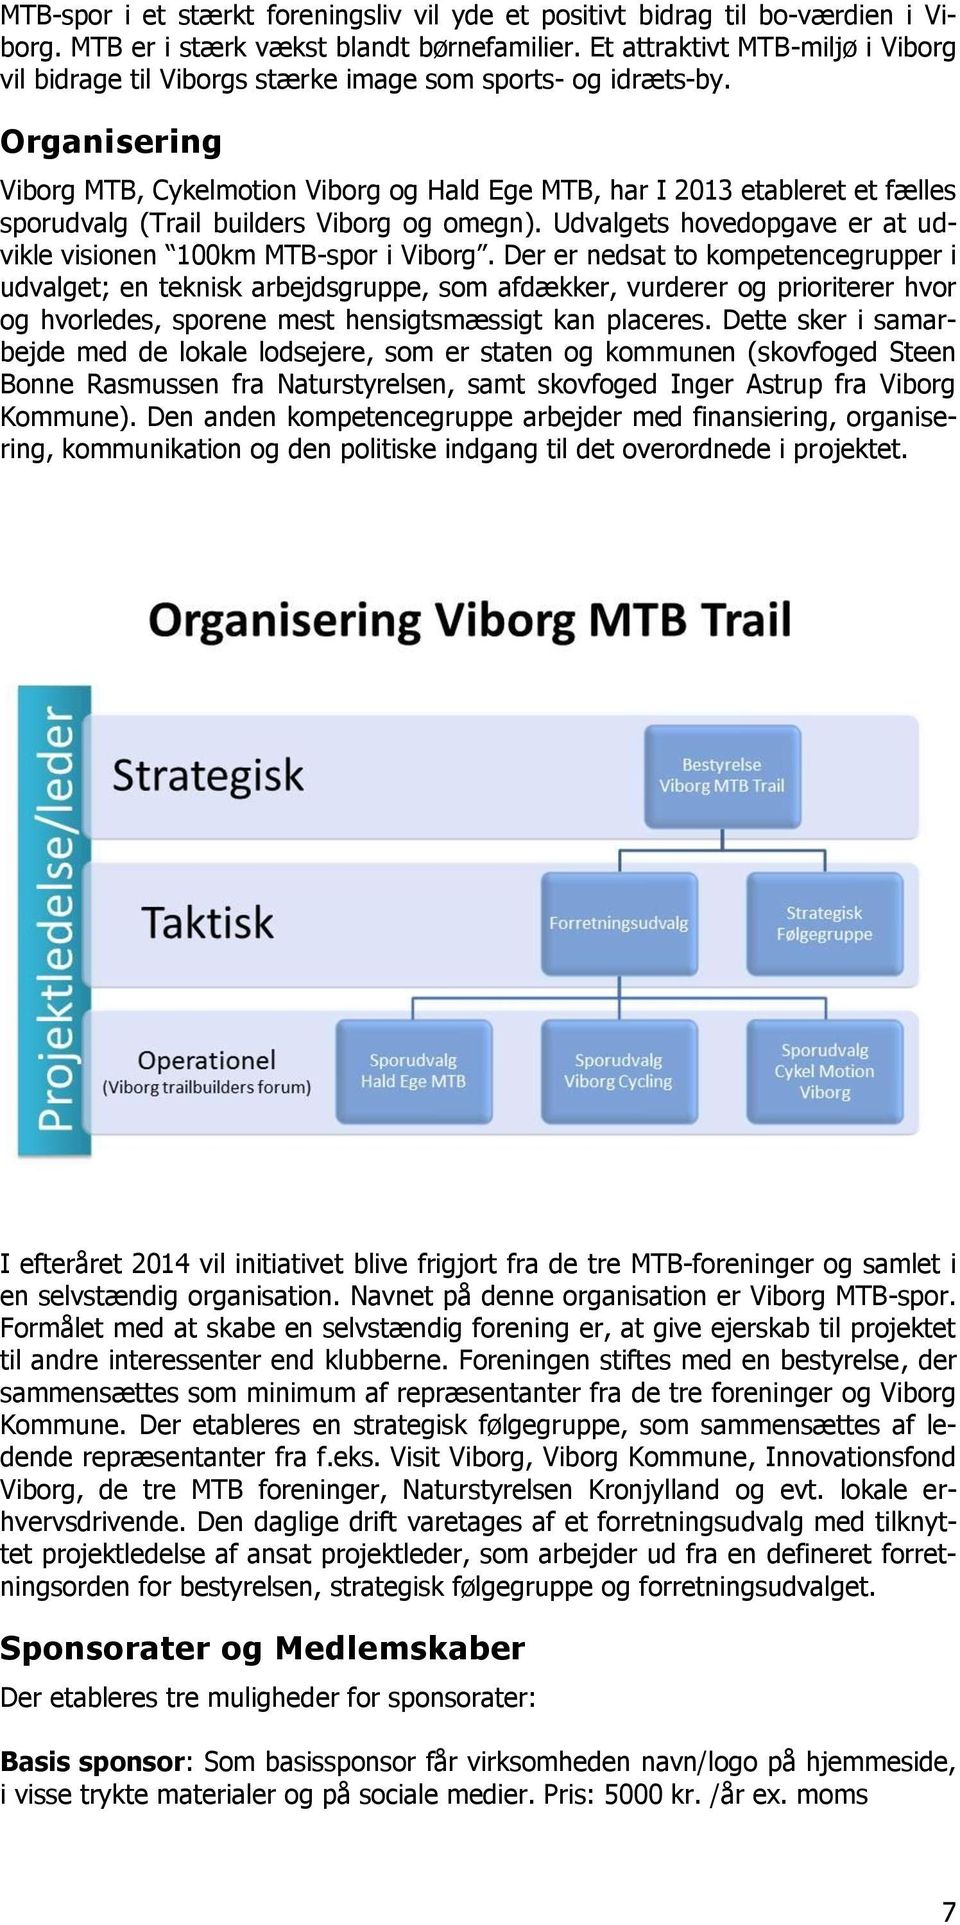 Organisering Viborg MTB, Cykelmotion Viborg og Hald Ege MTB, har I 2013 etableret et fælles sporudvalg (Trail builders Viborg og omegn).